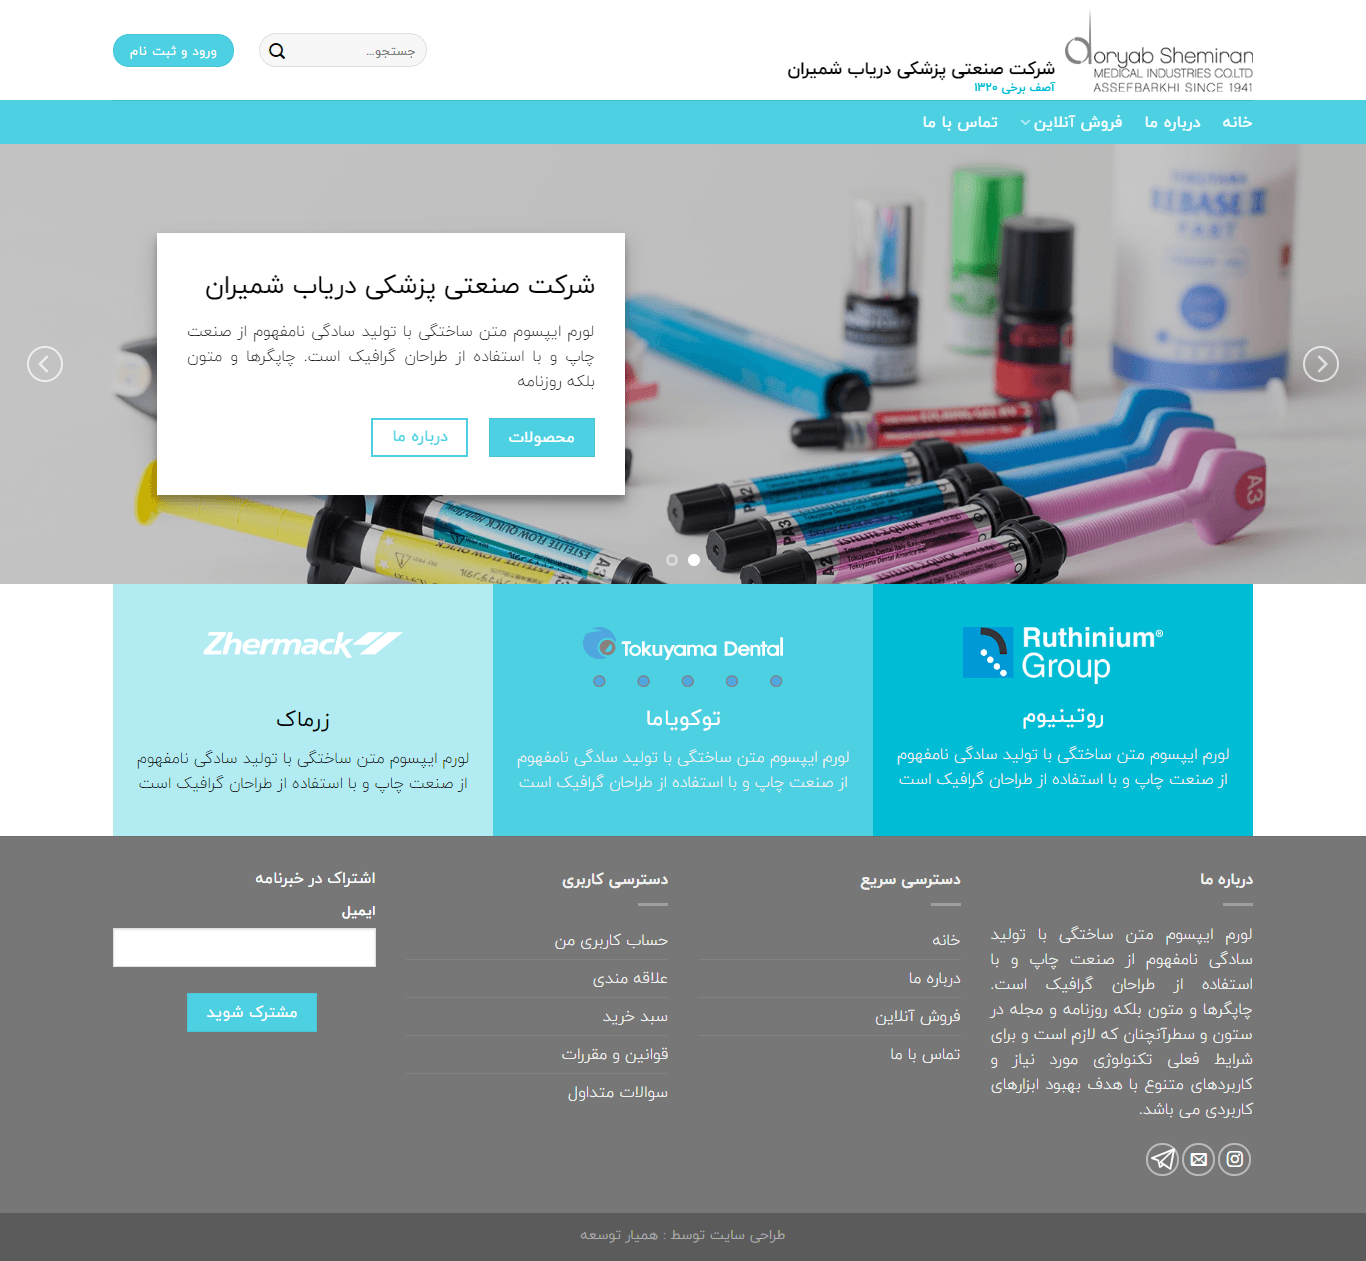 طراحی سایت شرکتی دُریاب شمیران